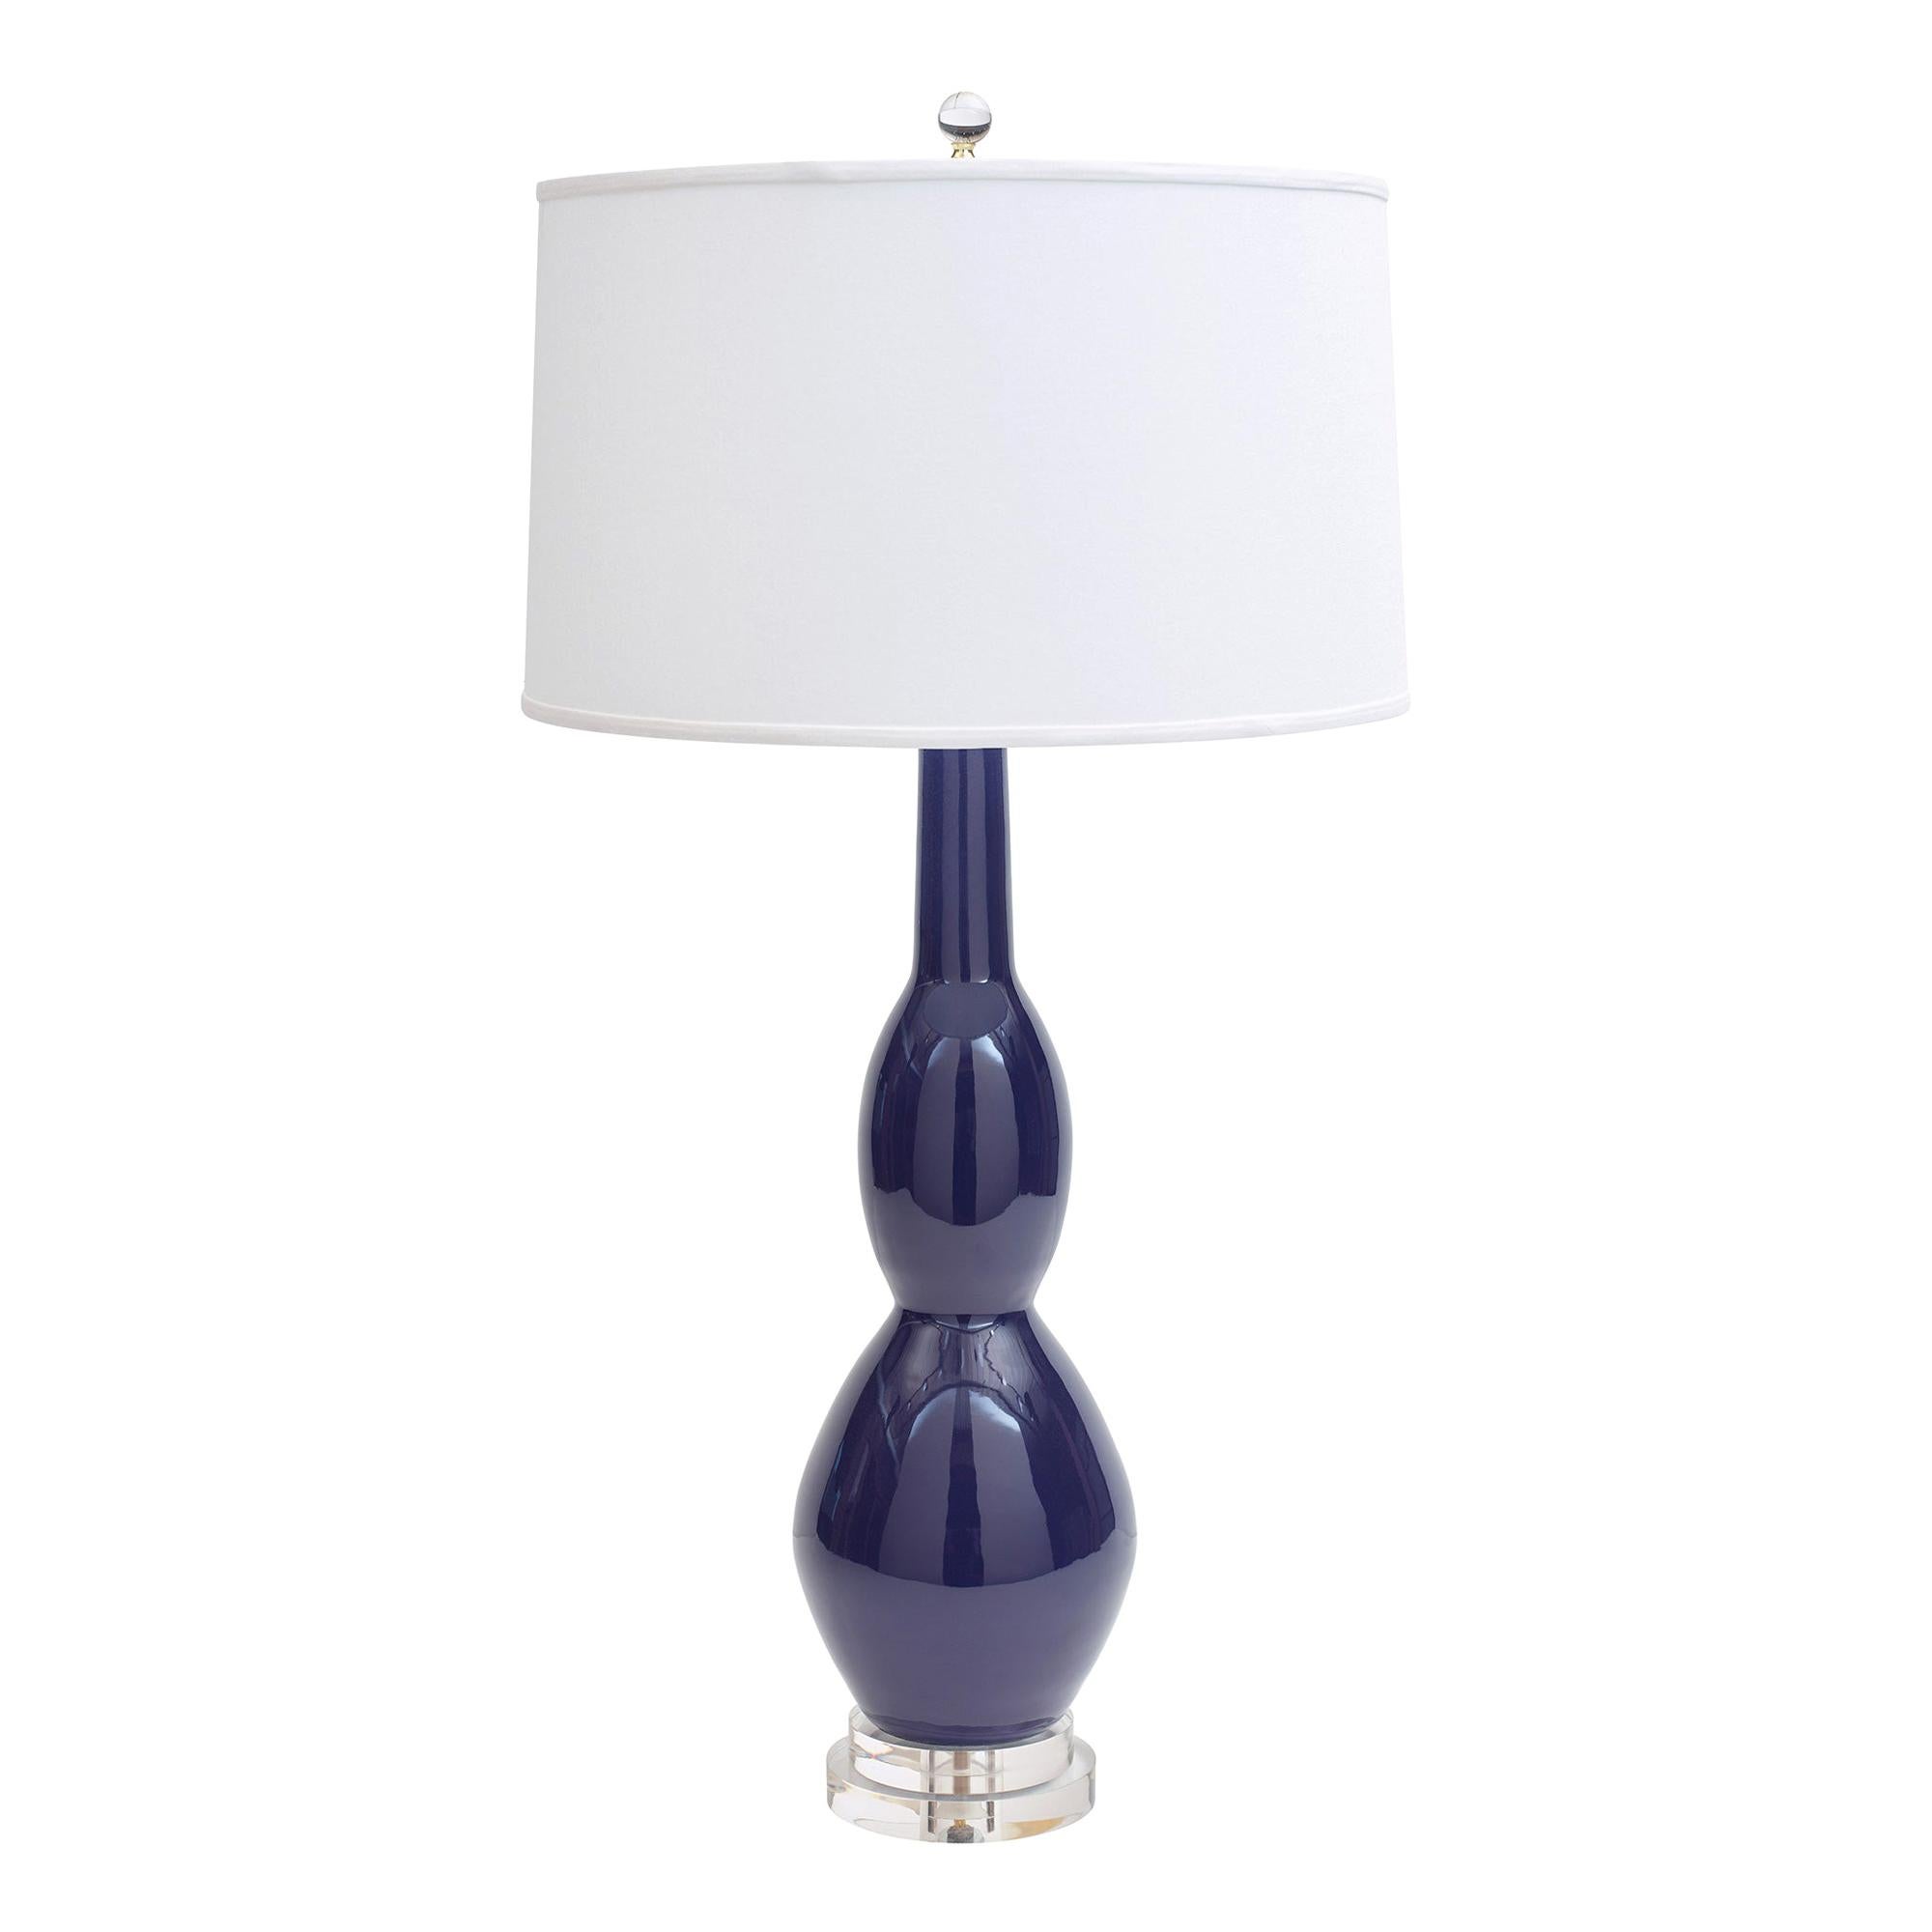 Jan Showers Kravet Marilyn Table Lamp with Ivory Linen Shade for Curatedkravet